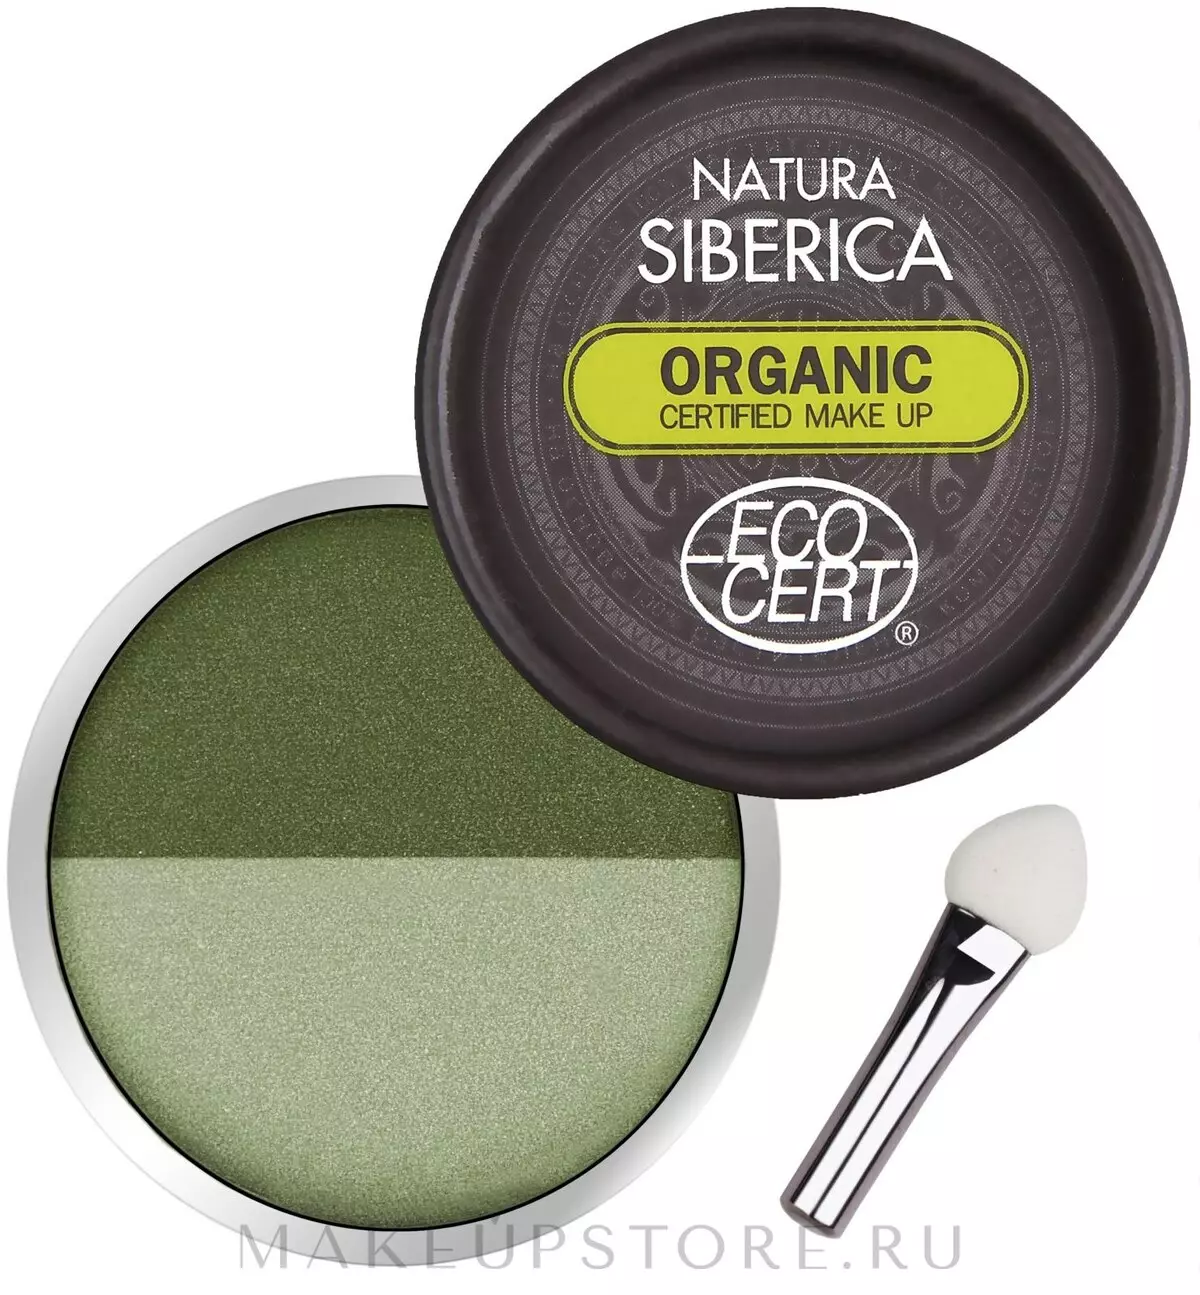 Kosmetyki Natura Siberica: Organic Dekoracyjne i Naturalne Kosmetyki z producenta. Recenzje kosmetologów 4850_17